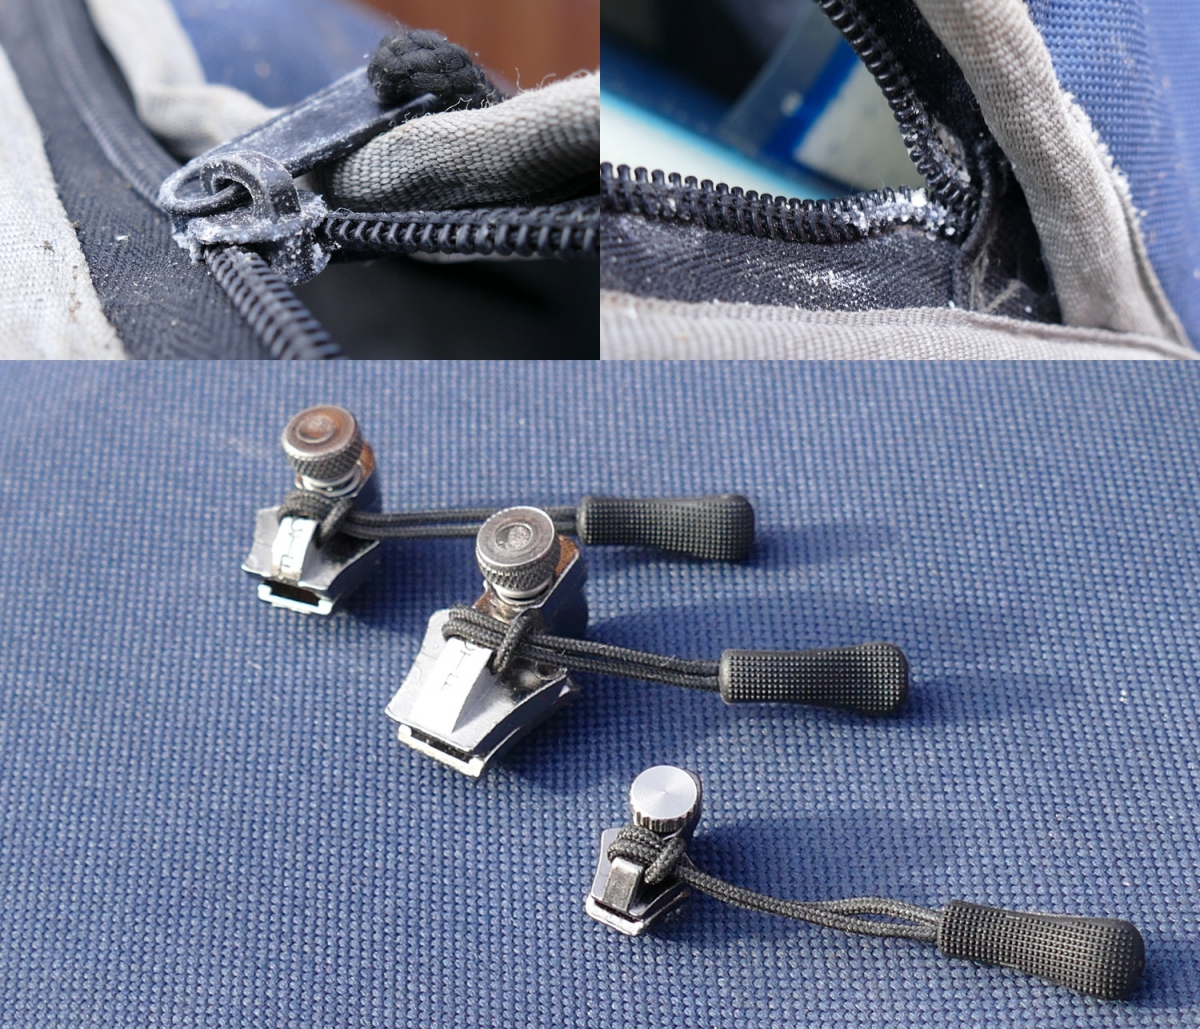 FixnZip Zipper Repair Kit